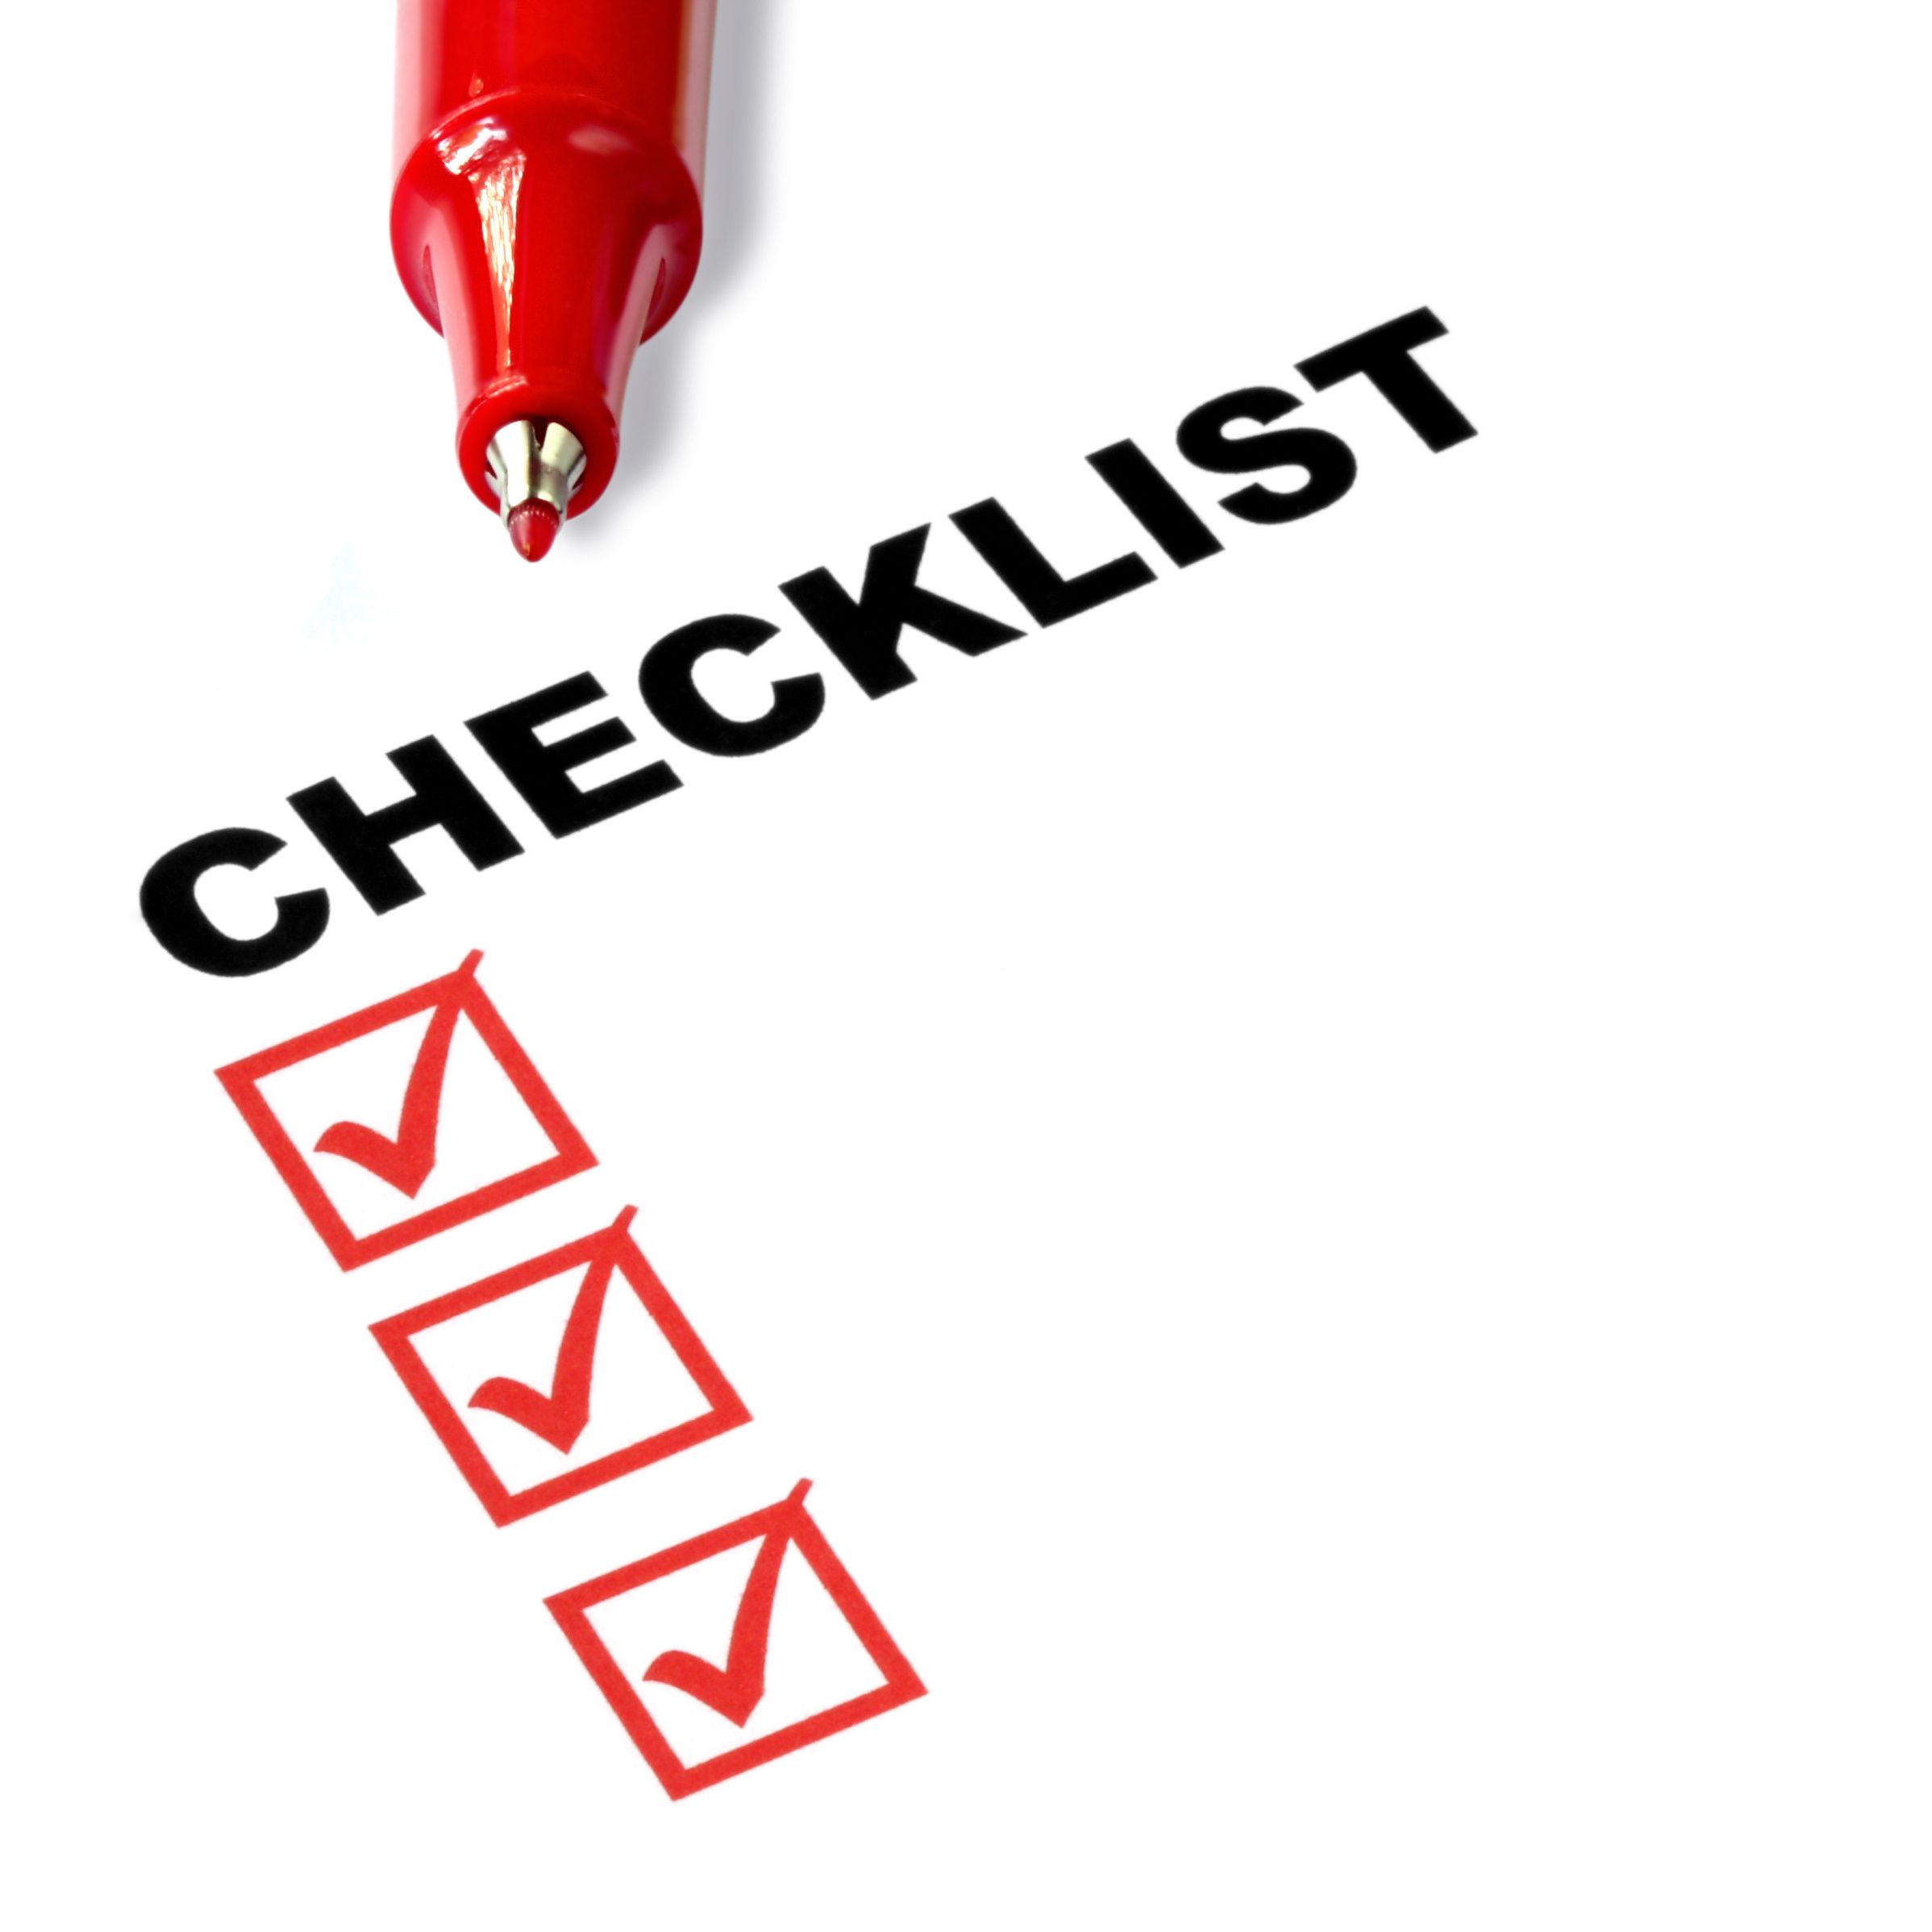 Checklist Wallpaper. Checklist Wallpaper, Checklist Black Background and Checklist Background